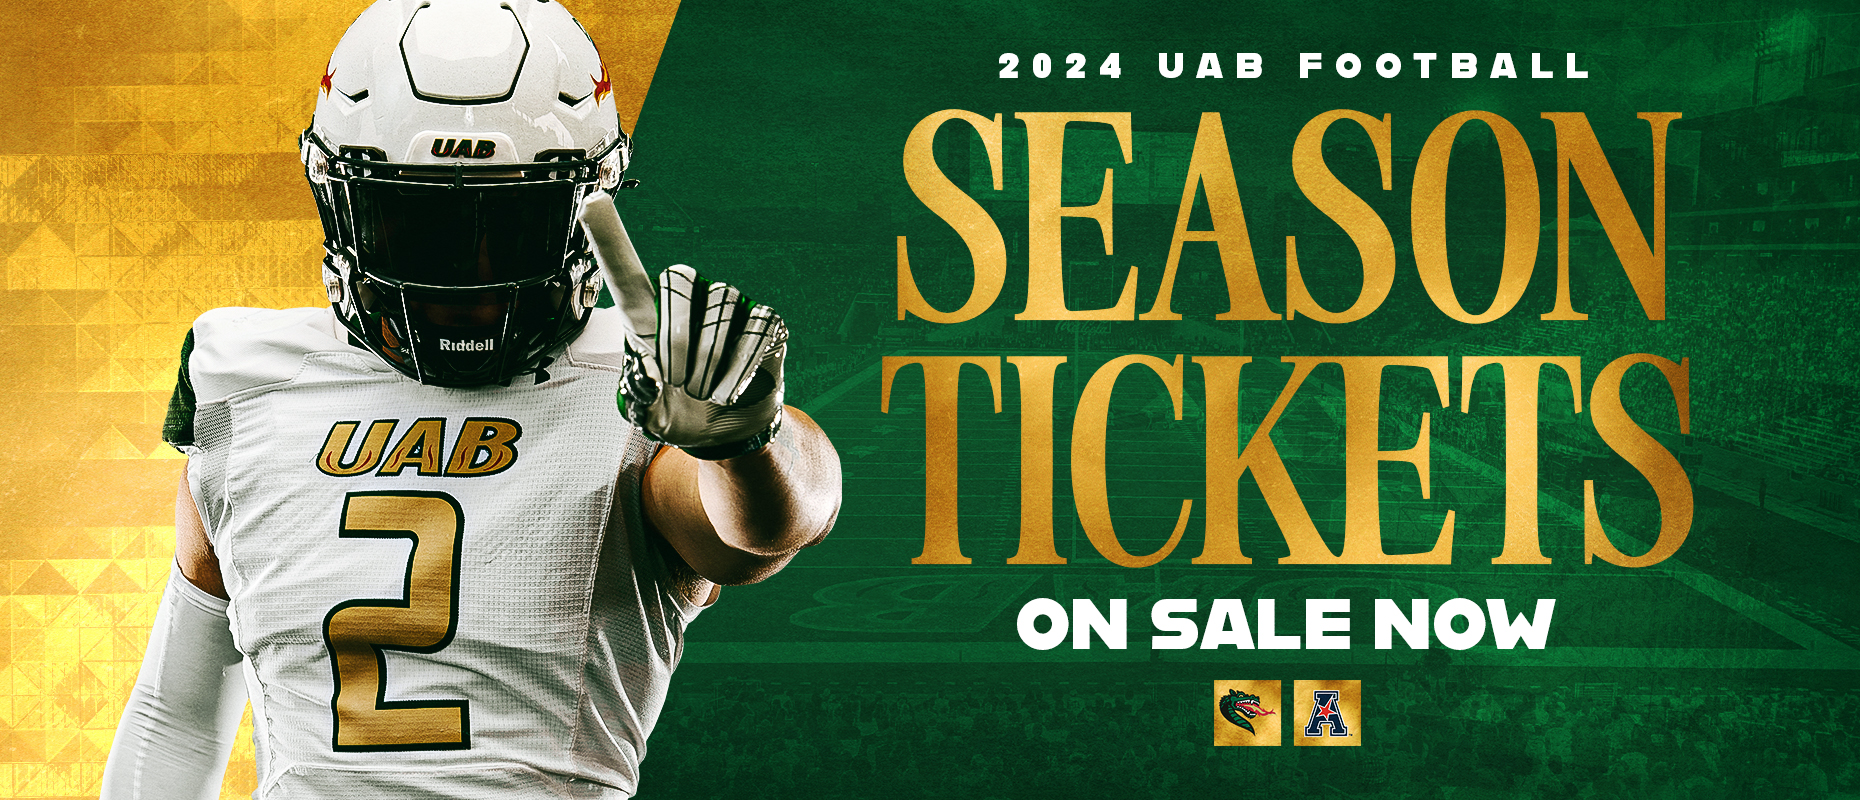 2024 UAB Football season tickets on sale now.